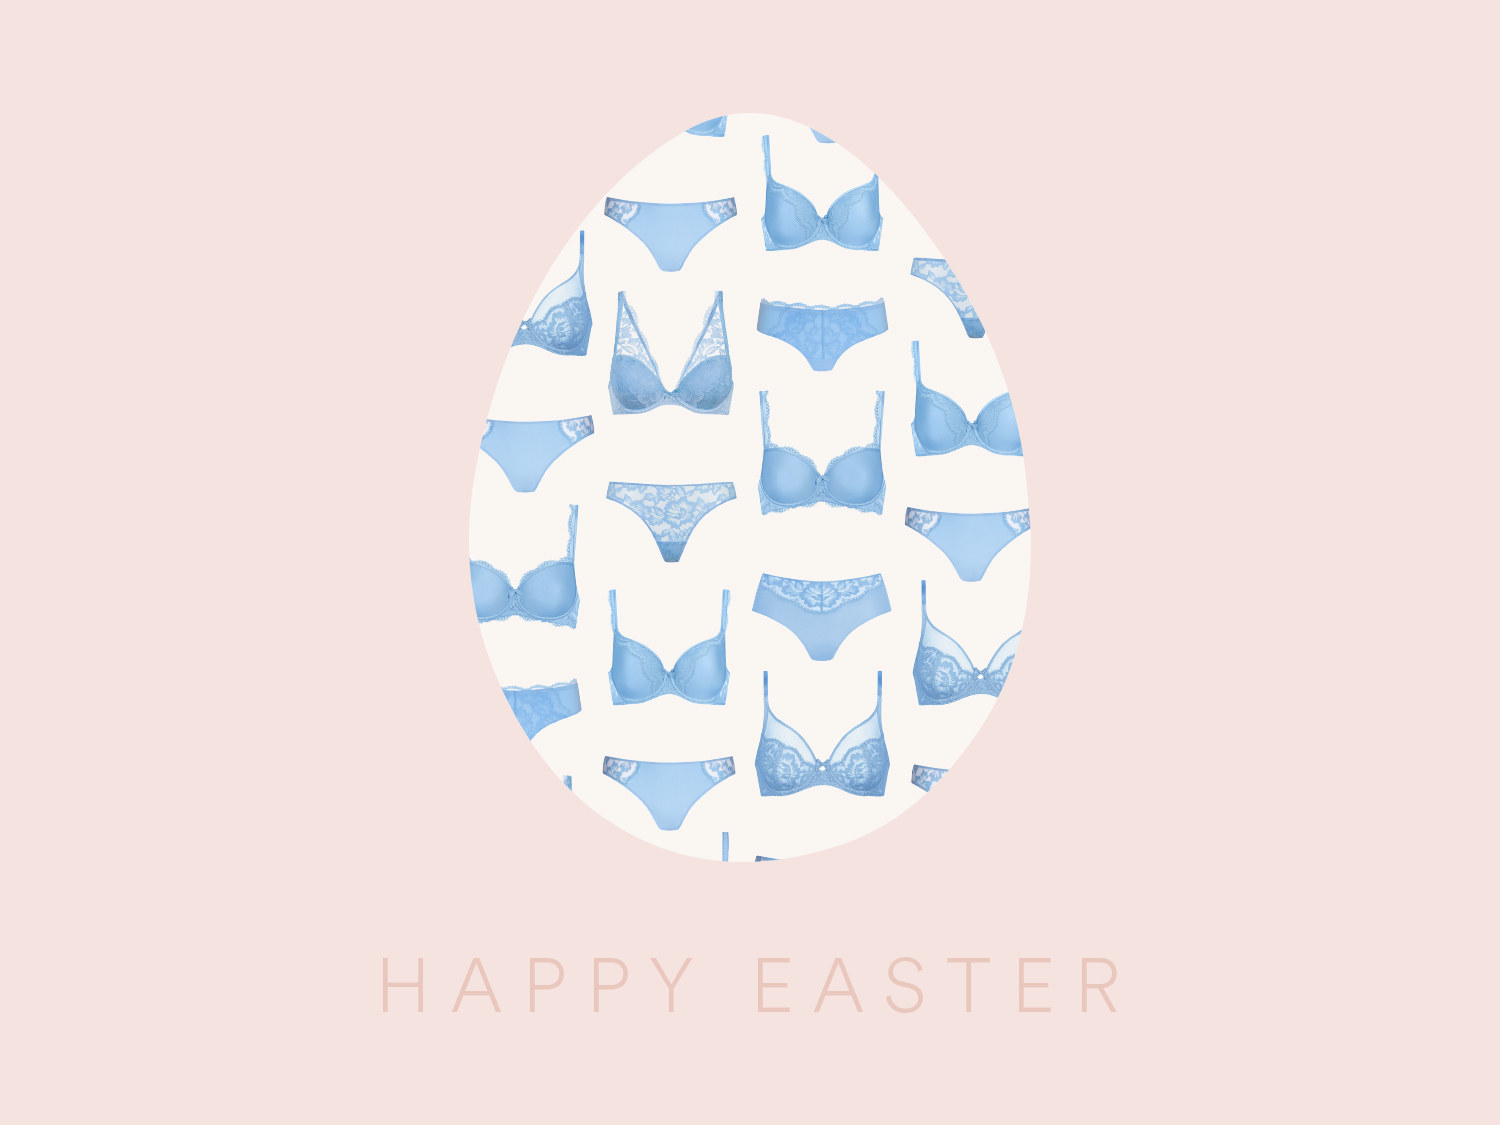 mey wünscht frohe Ostern!